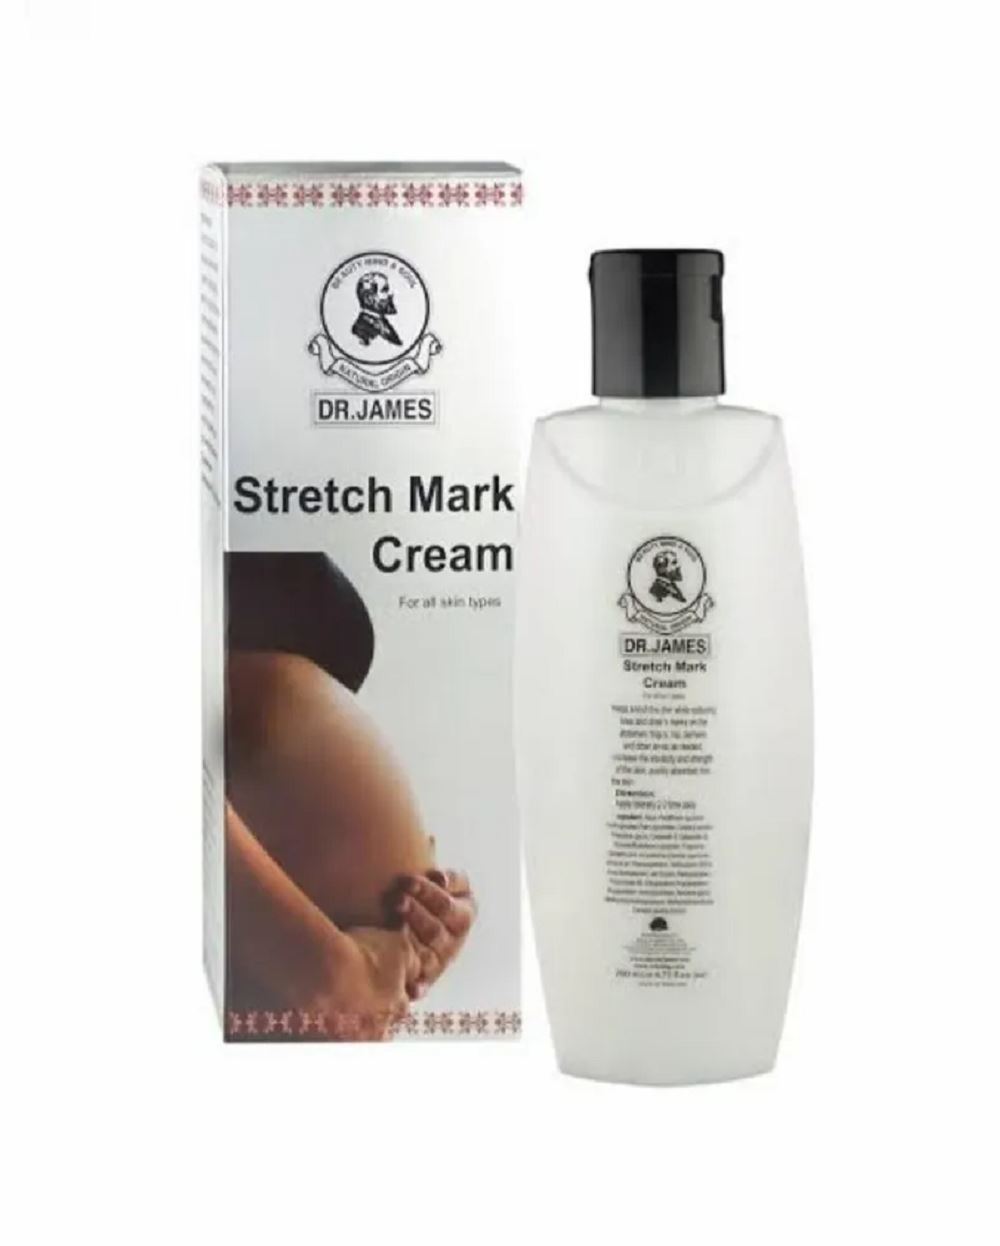 Dr James stretch mark cream reviews